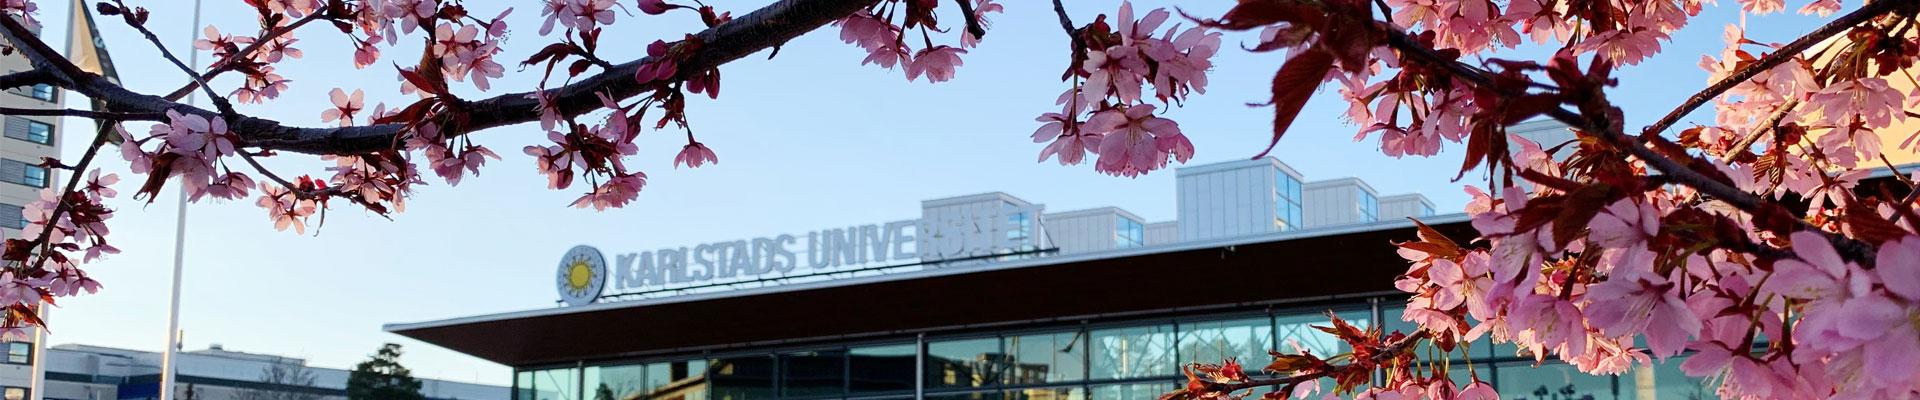 Karlstad university cherry blossom